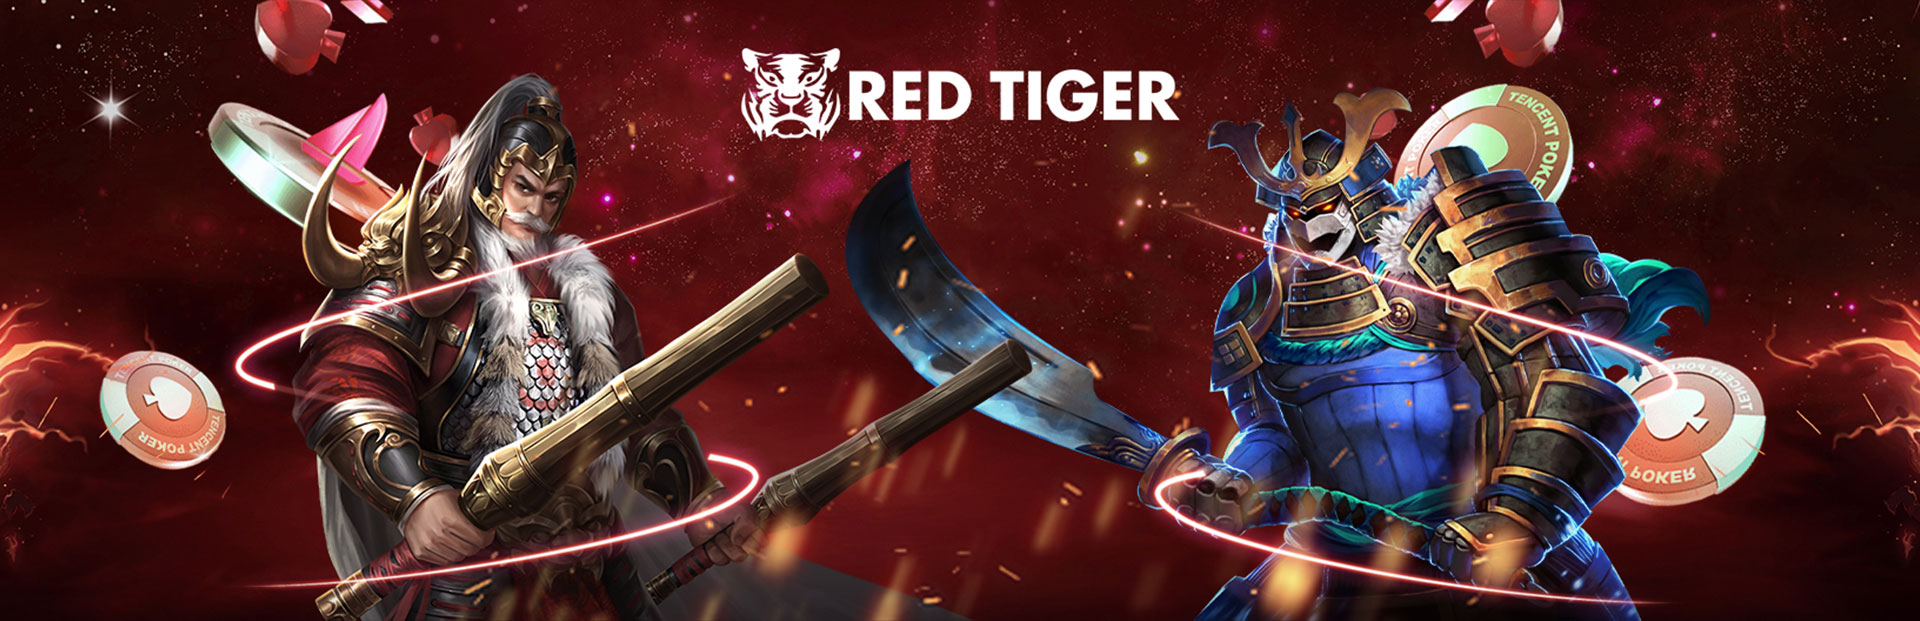 red tiger header dt